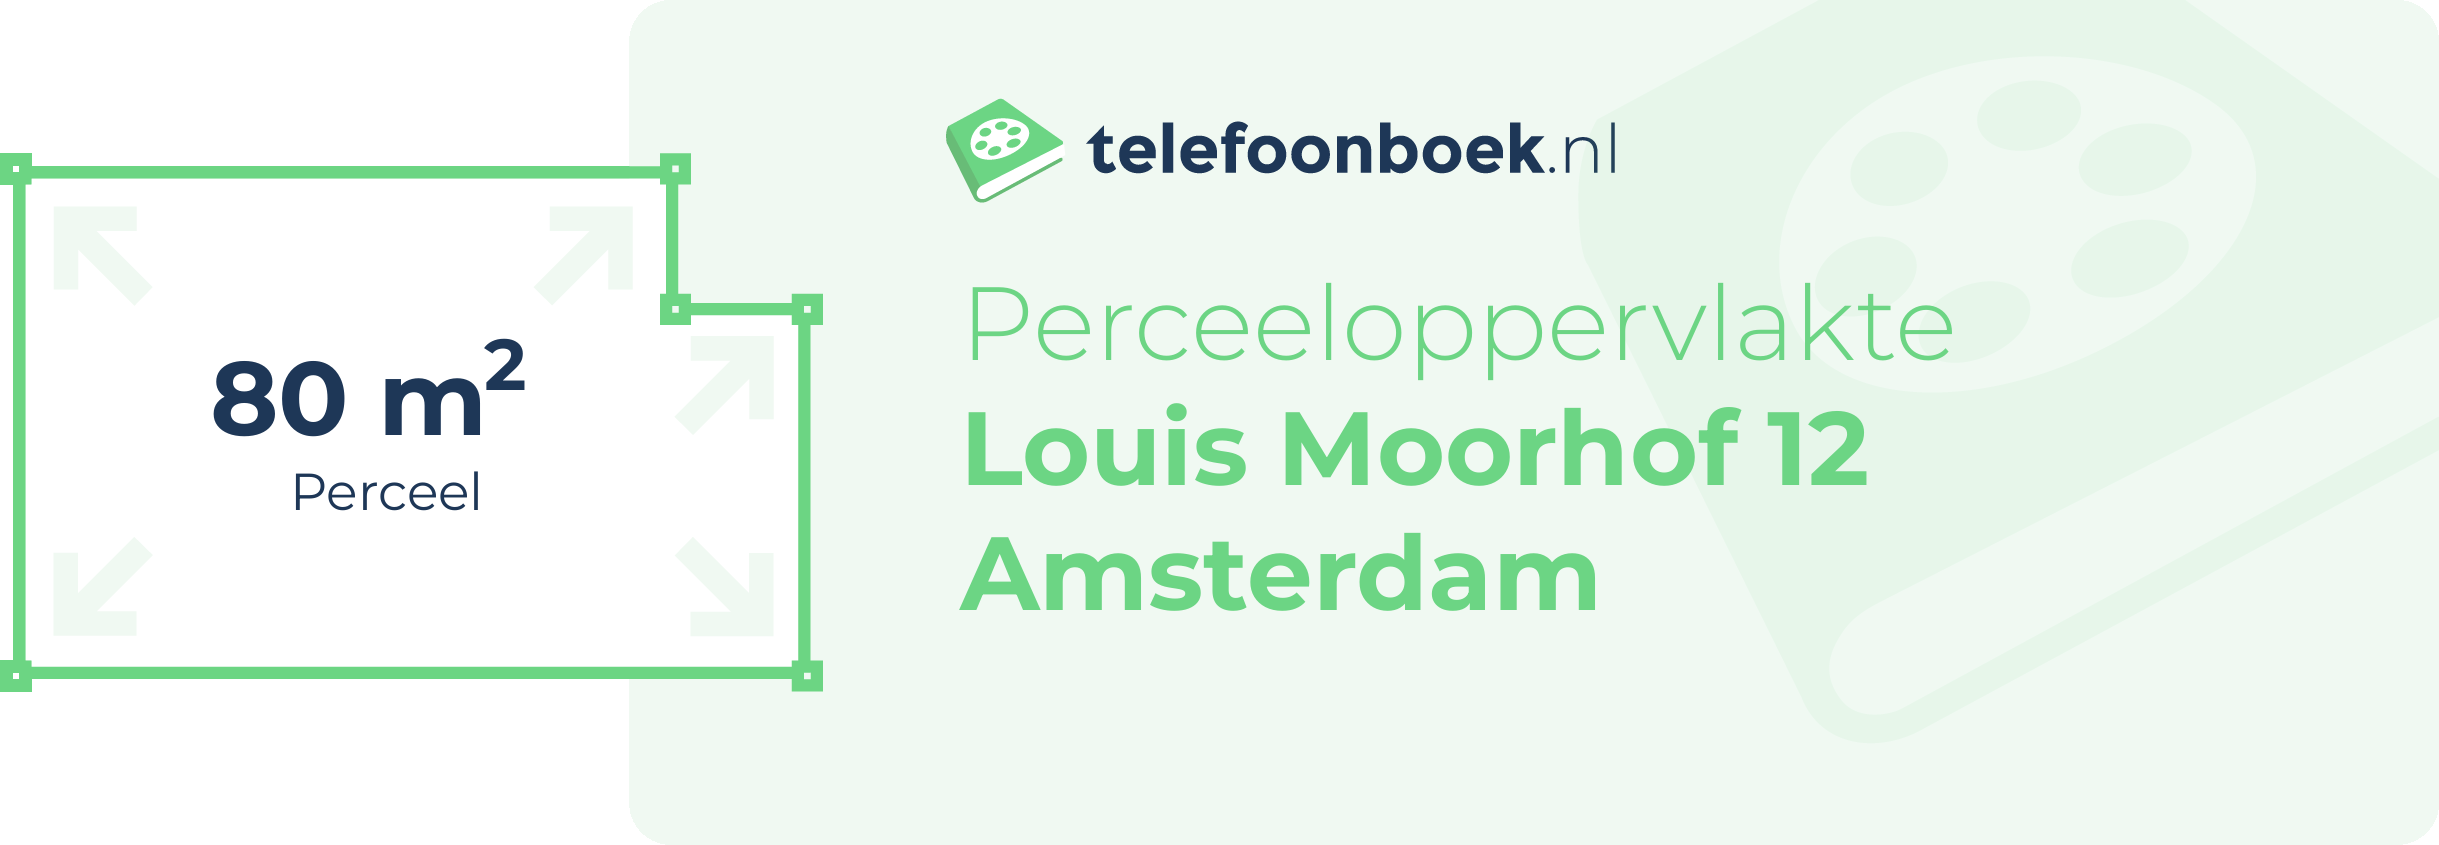 Perceeloppervlakte Louis Moorhof 12 Amsterdam